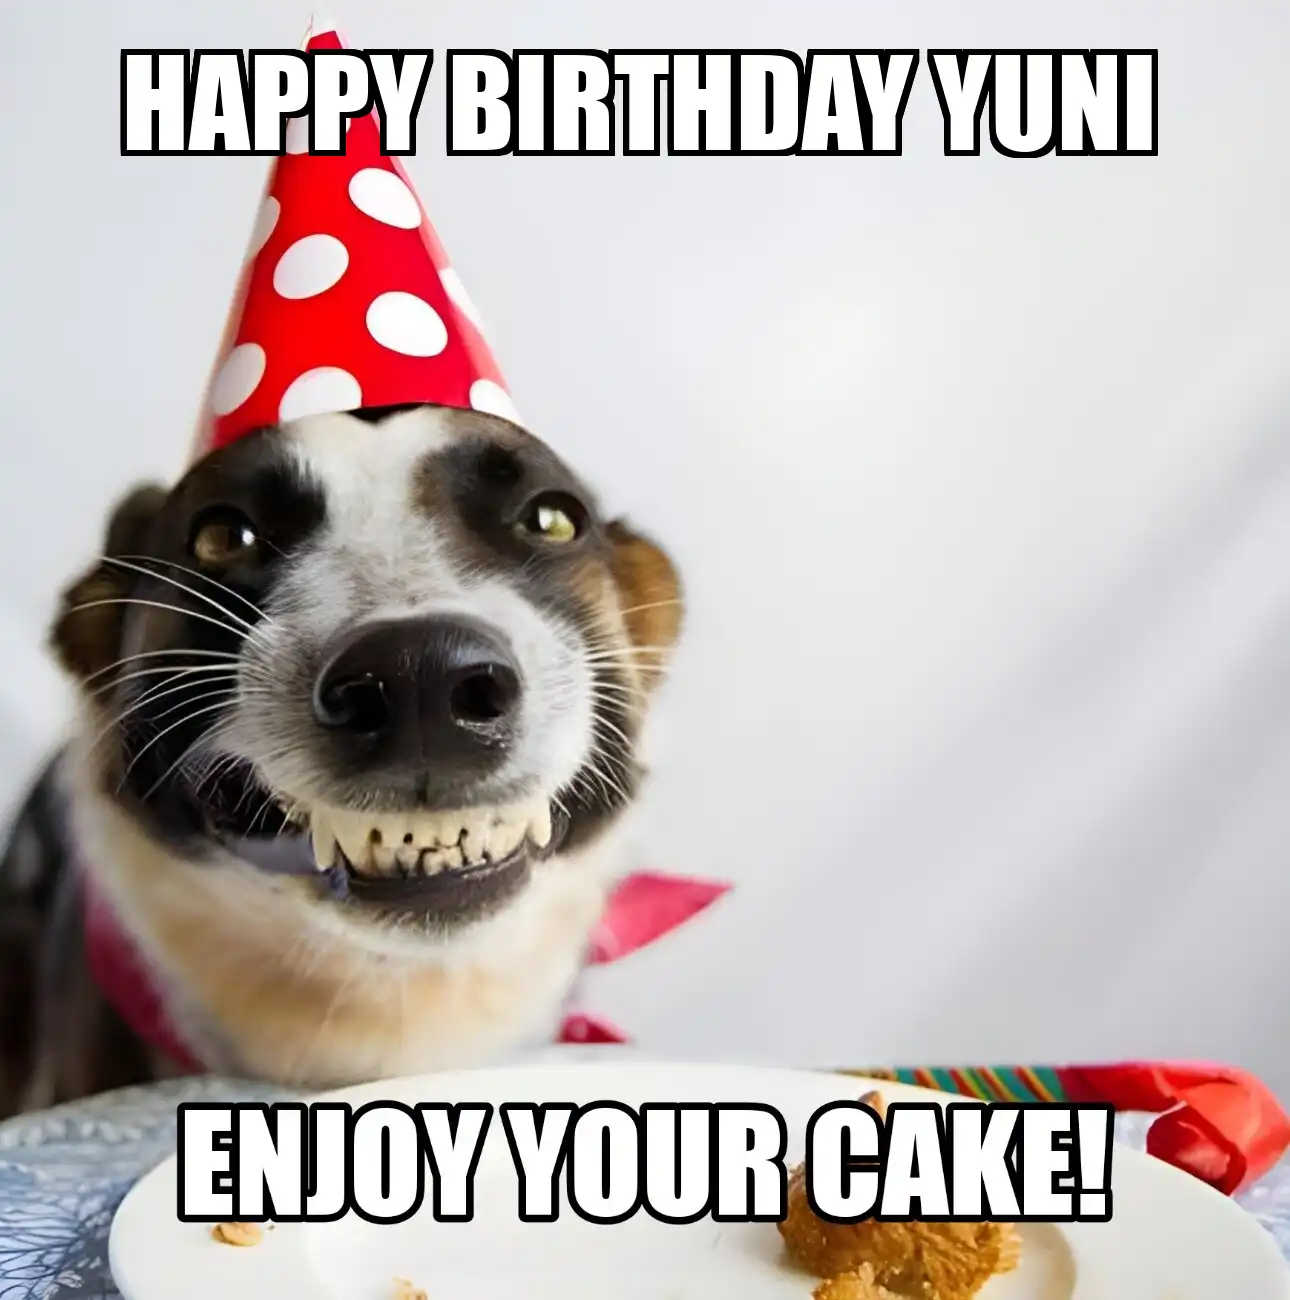 Happy Birthday Yuni Enjoy Your Cake Dog Meme